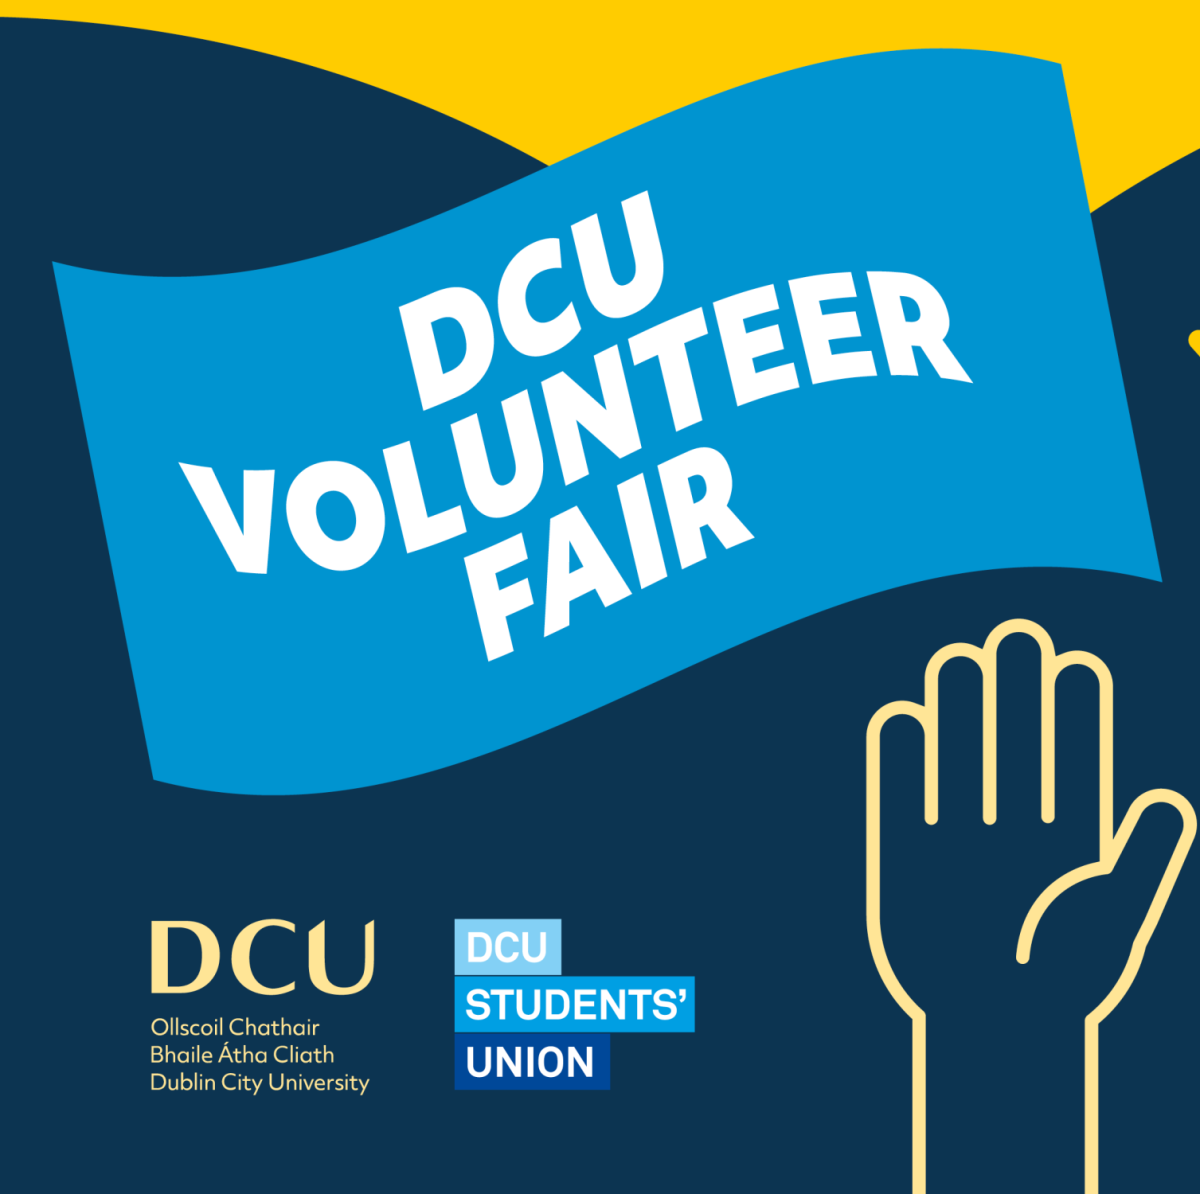 DCU Volunteer Fair 2023